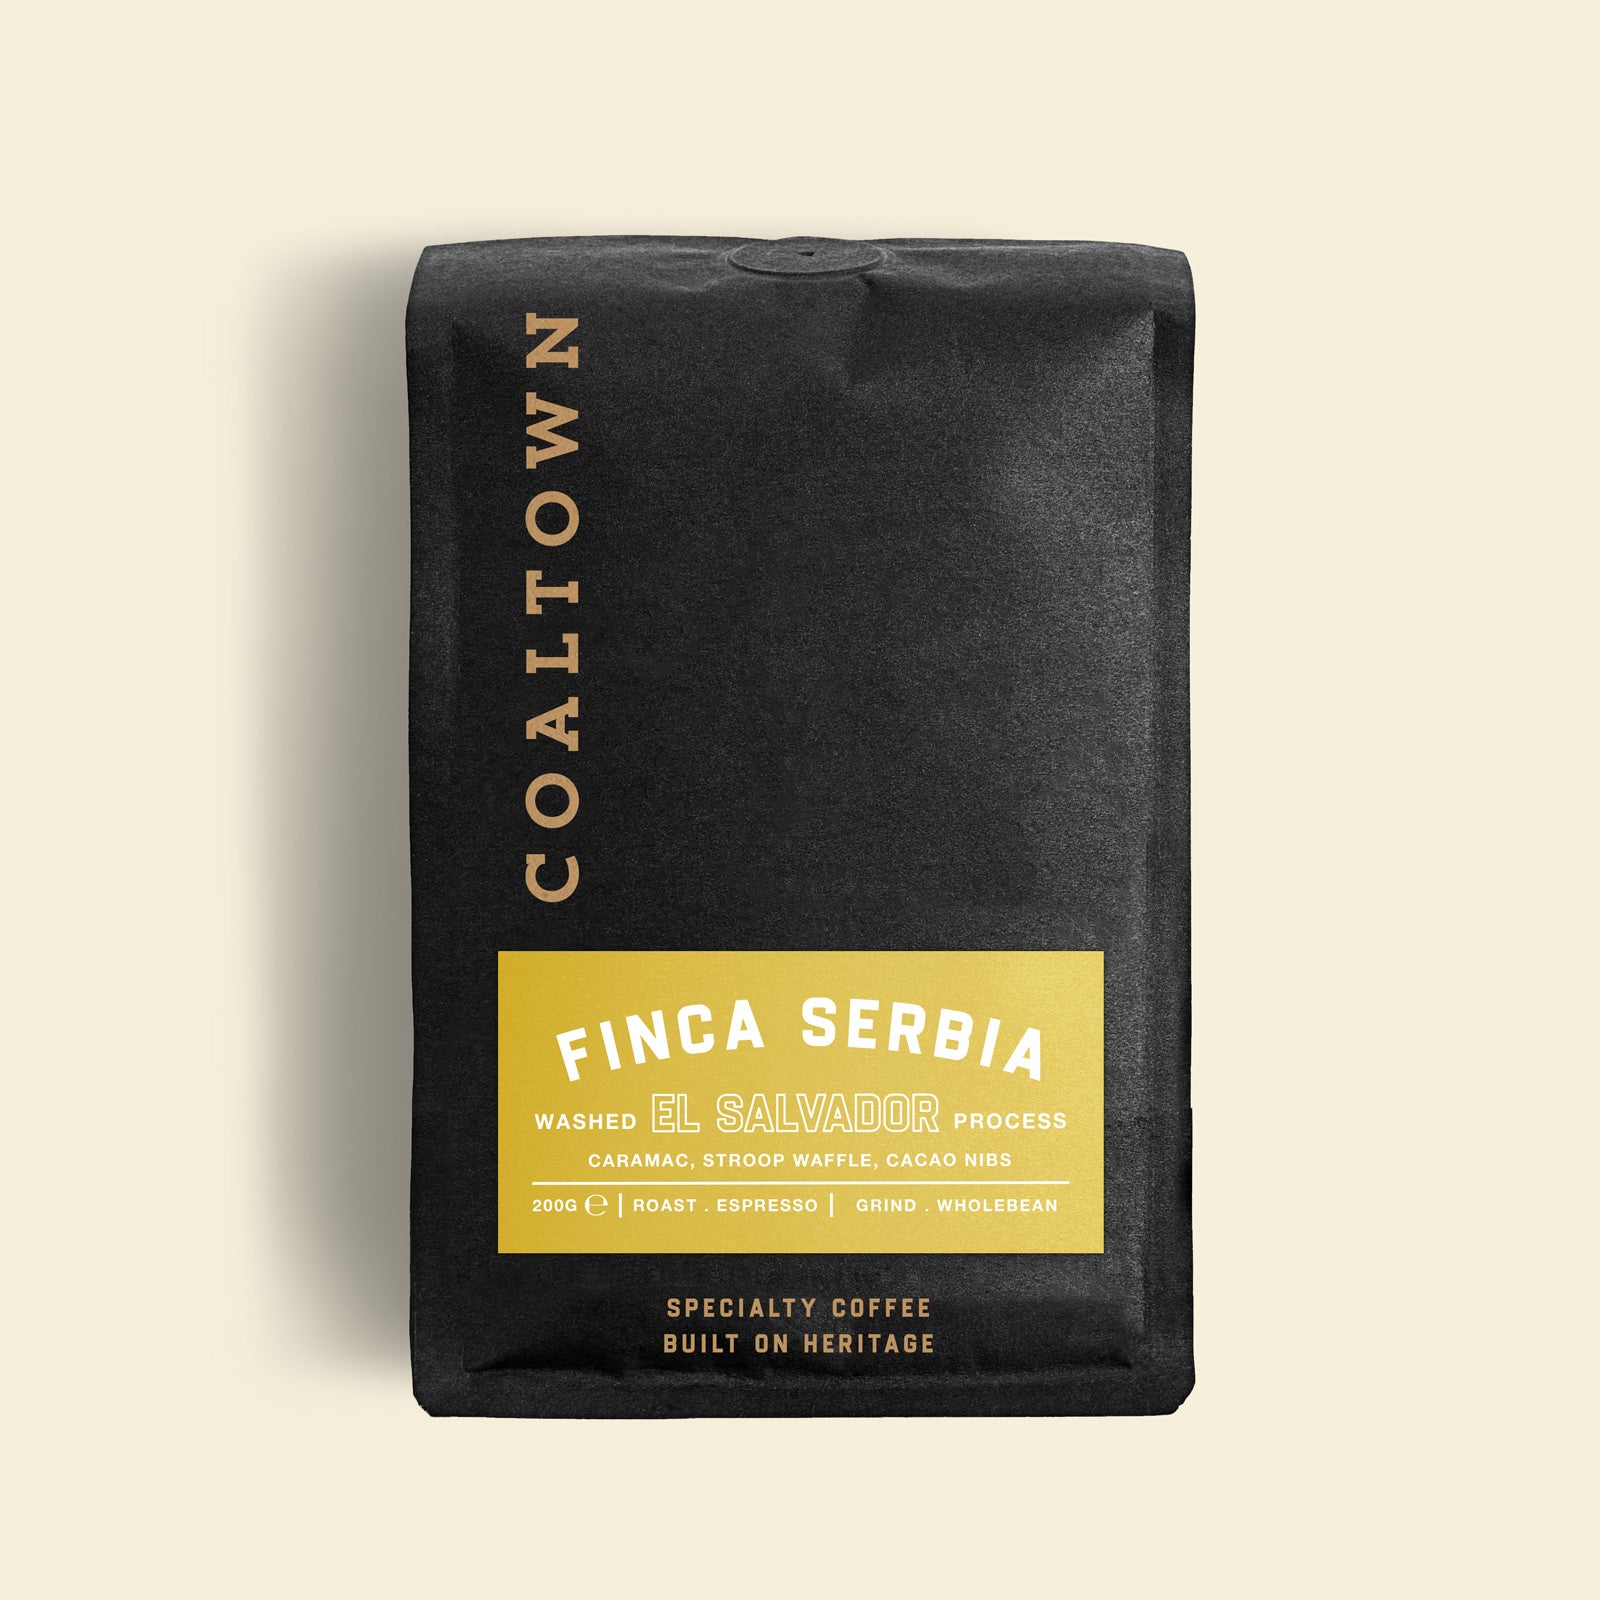 El Ingenio El Salvador specialty espresso coffee